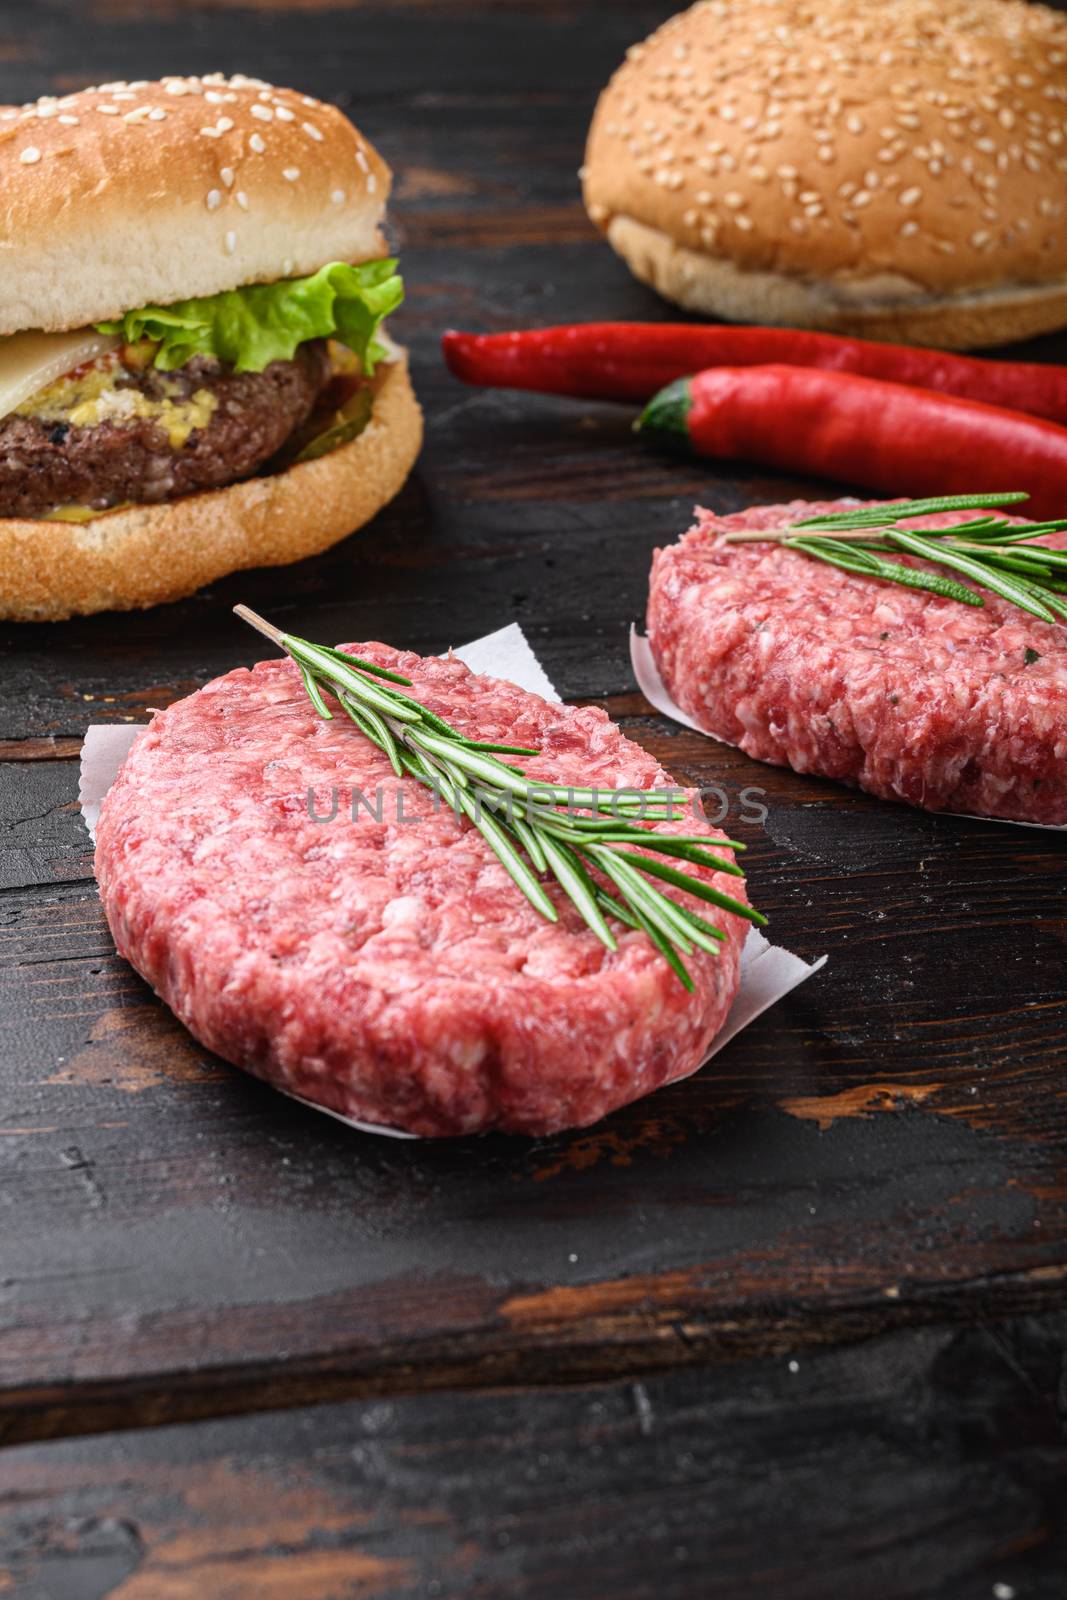 Raw ground beef meat burger steak cutlets on dark wooden background.